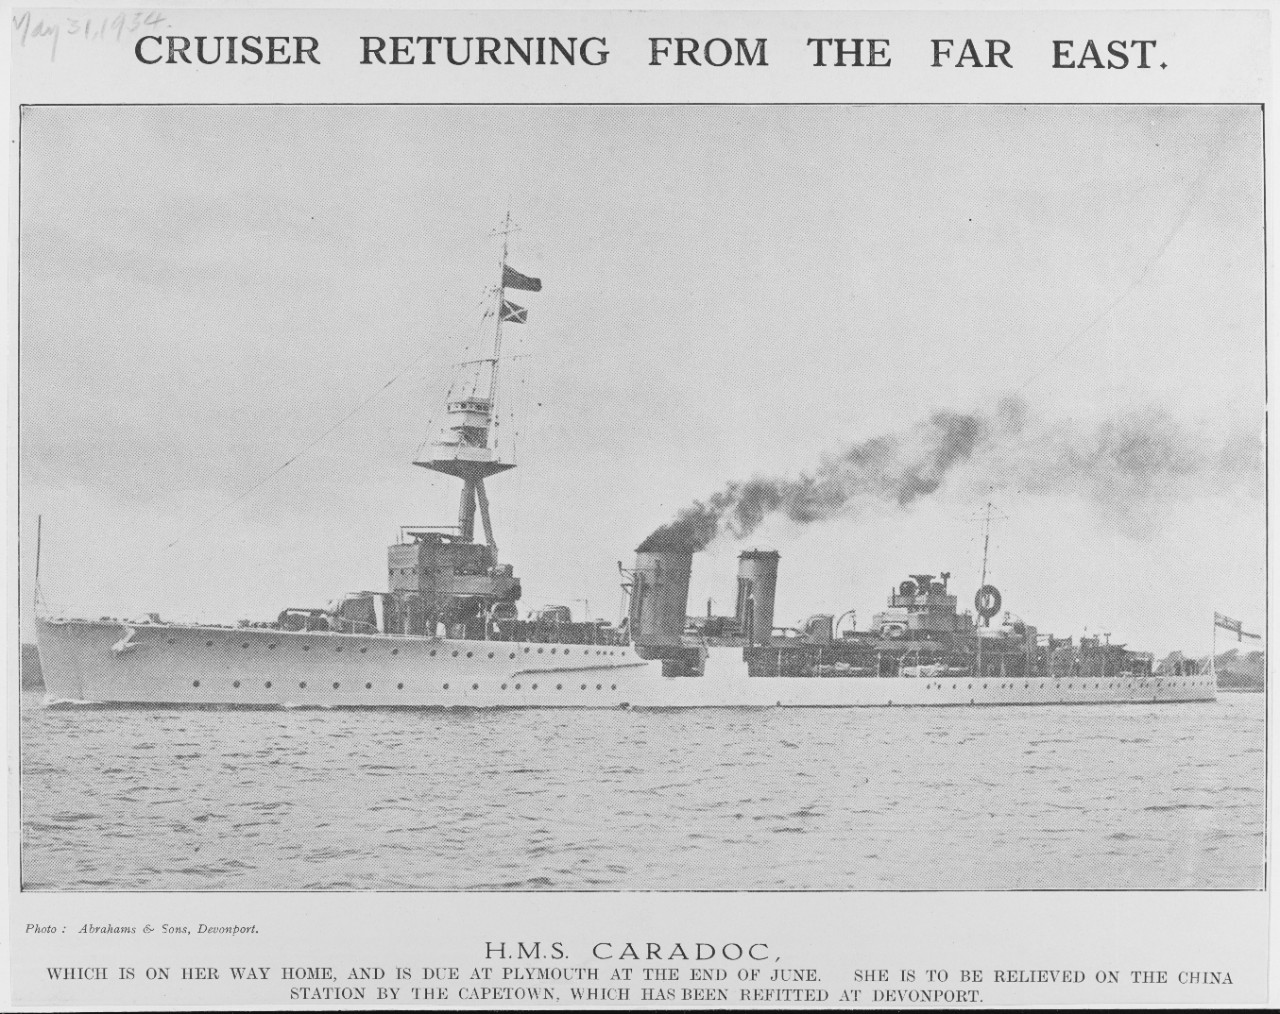 HMS CARADOC (British Cruiser, 1916)